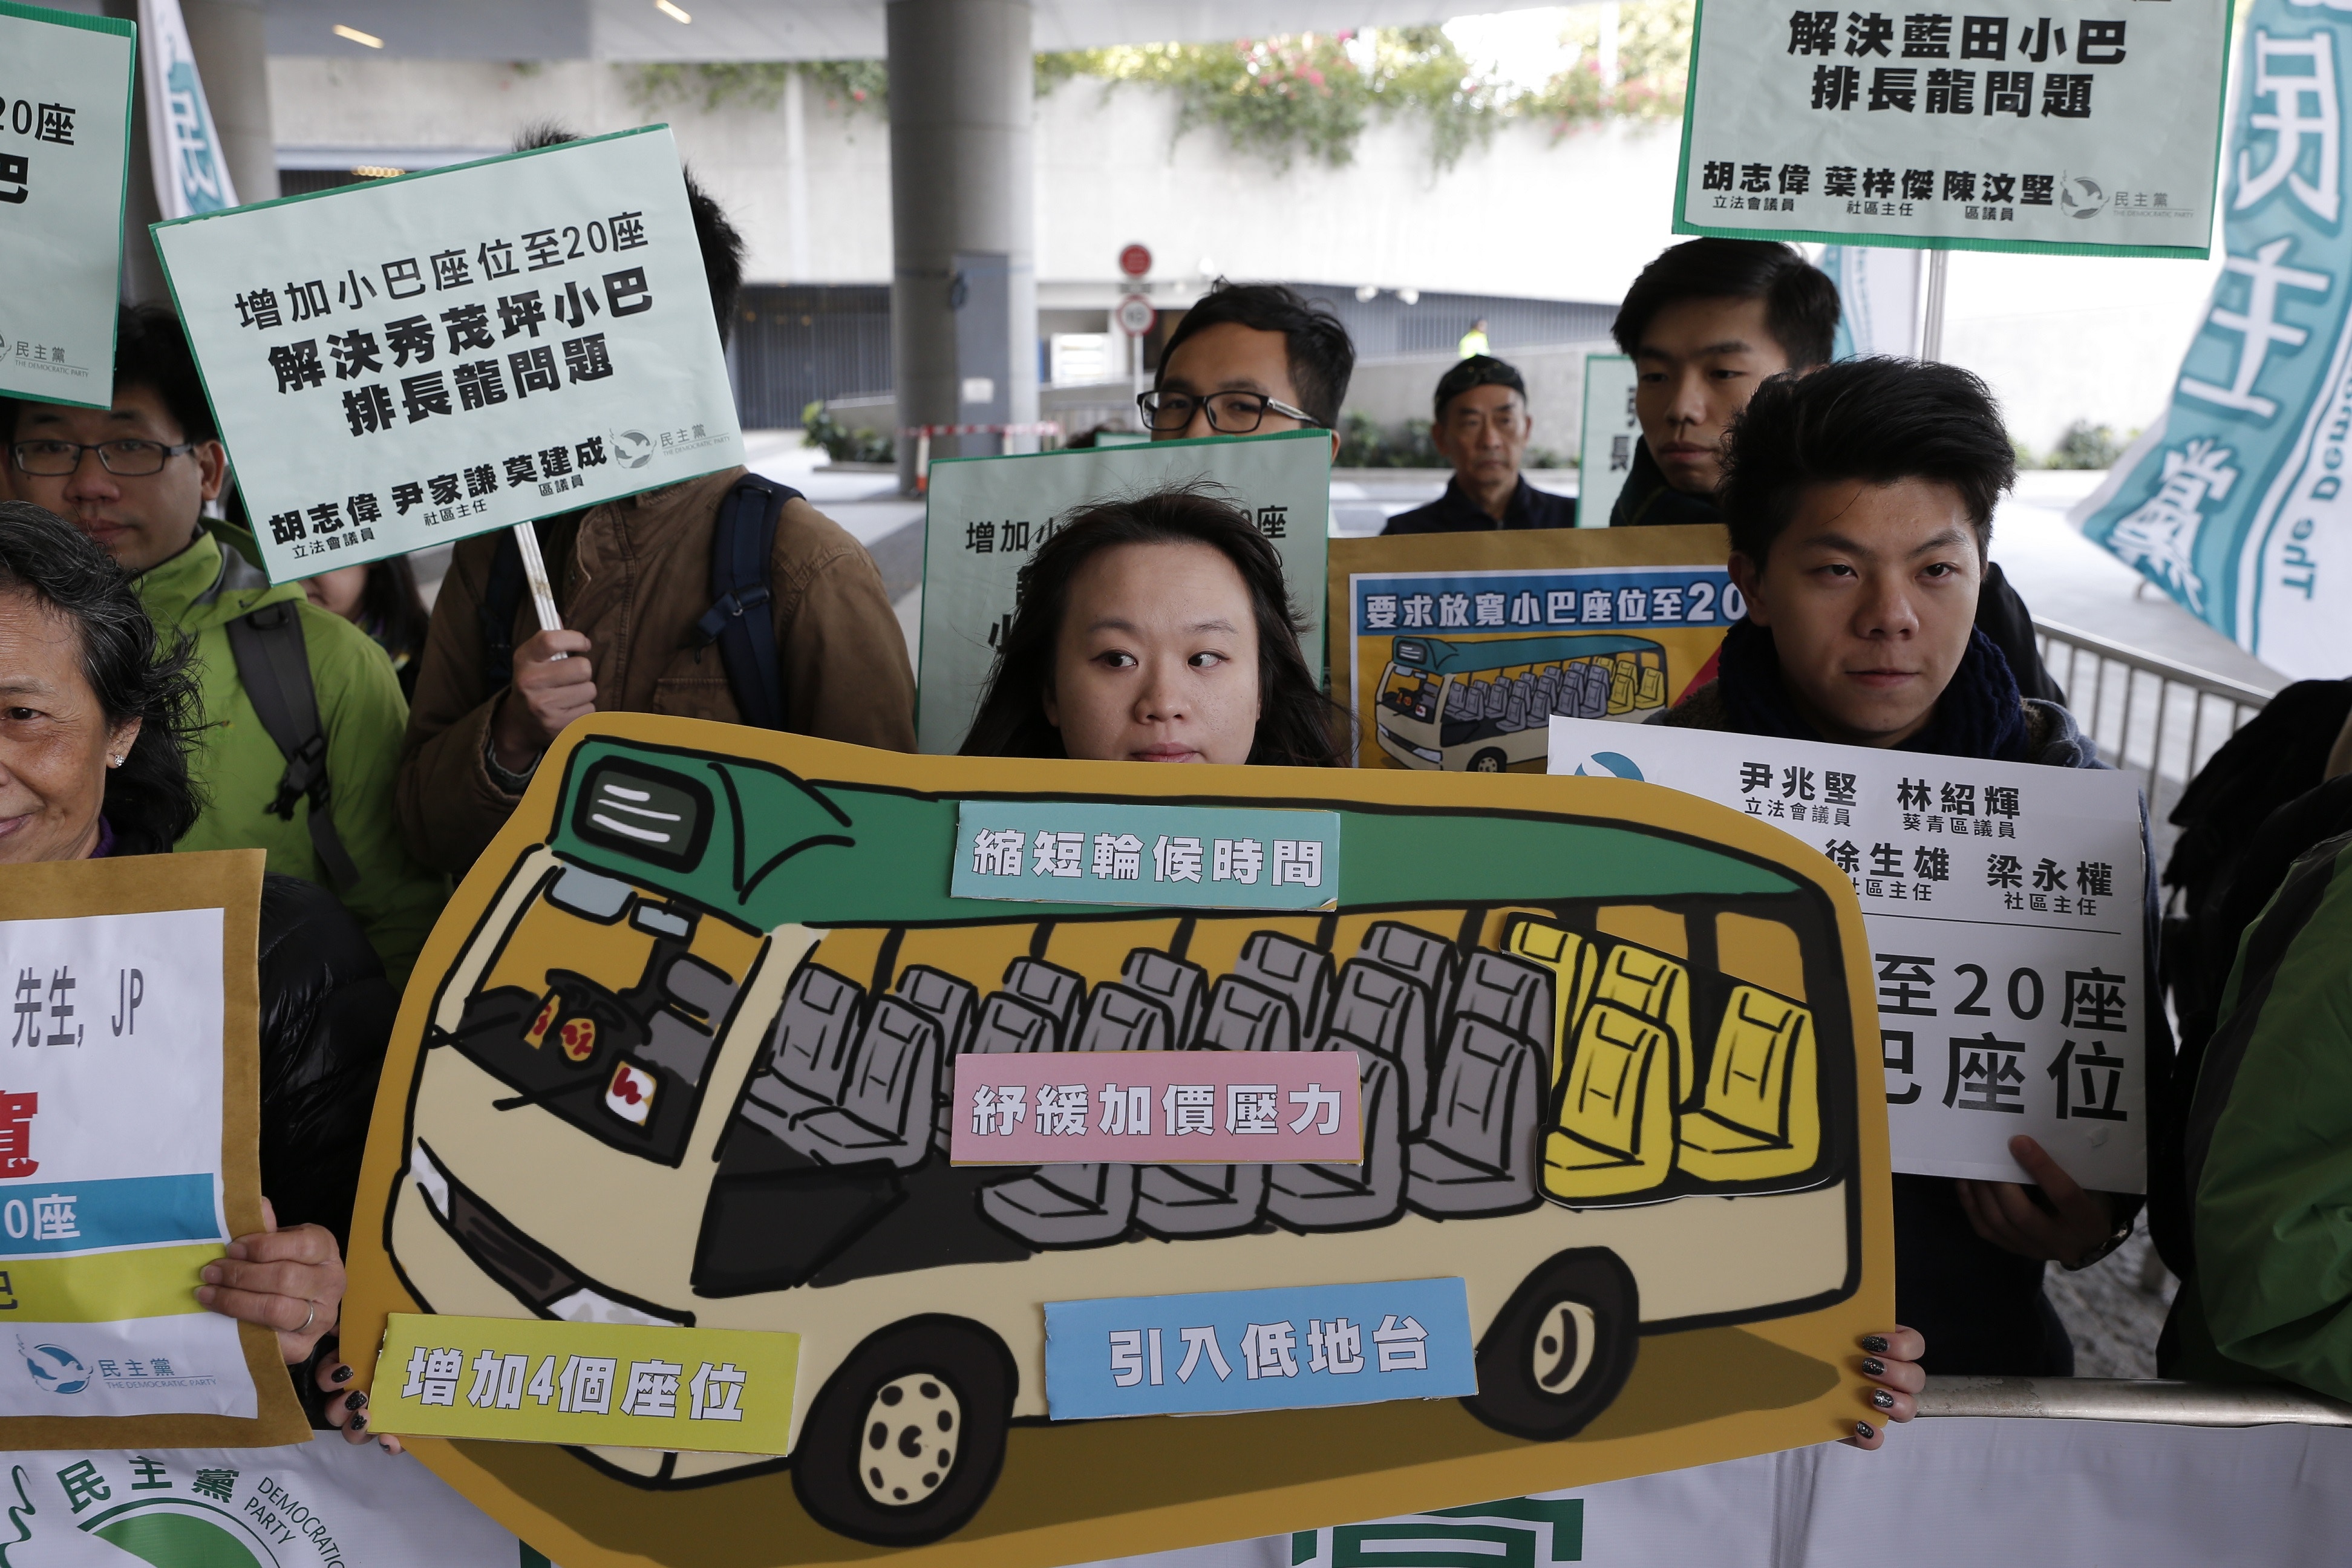 小巴座位爭議立法會通過小巴座位加至個無約束力議案 香港01 社會新聞